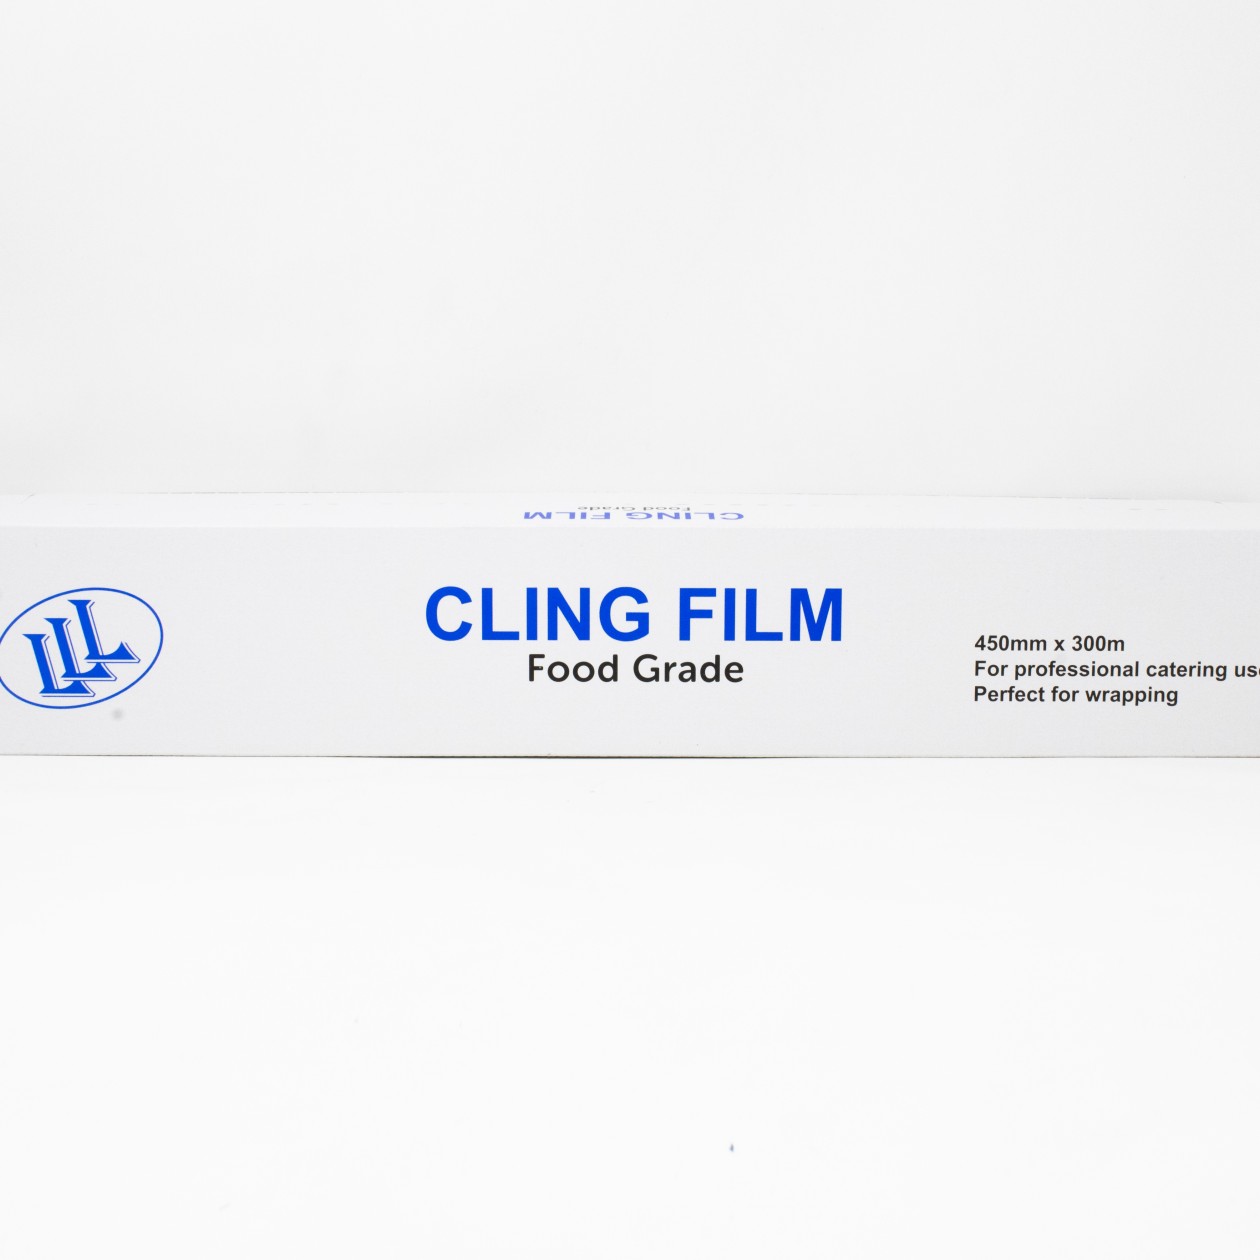 LLL Cling Film Food Grade 450mm x 300m